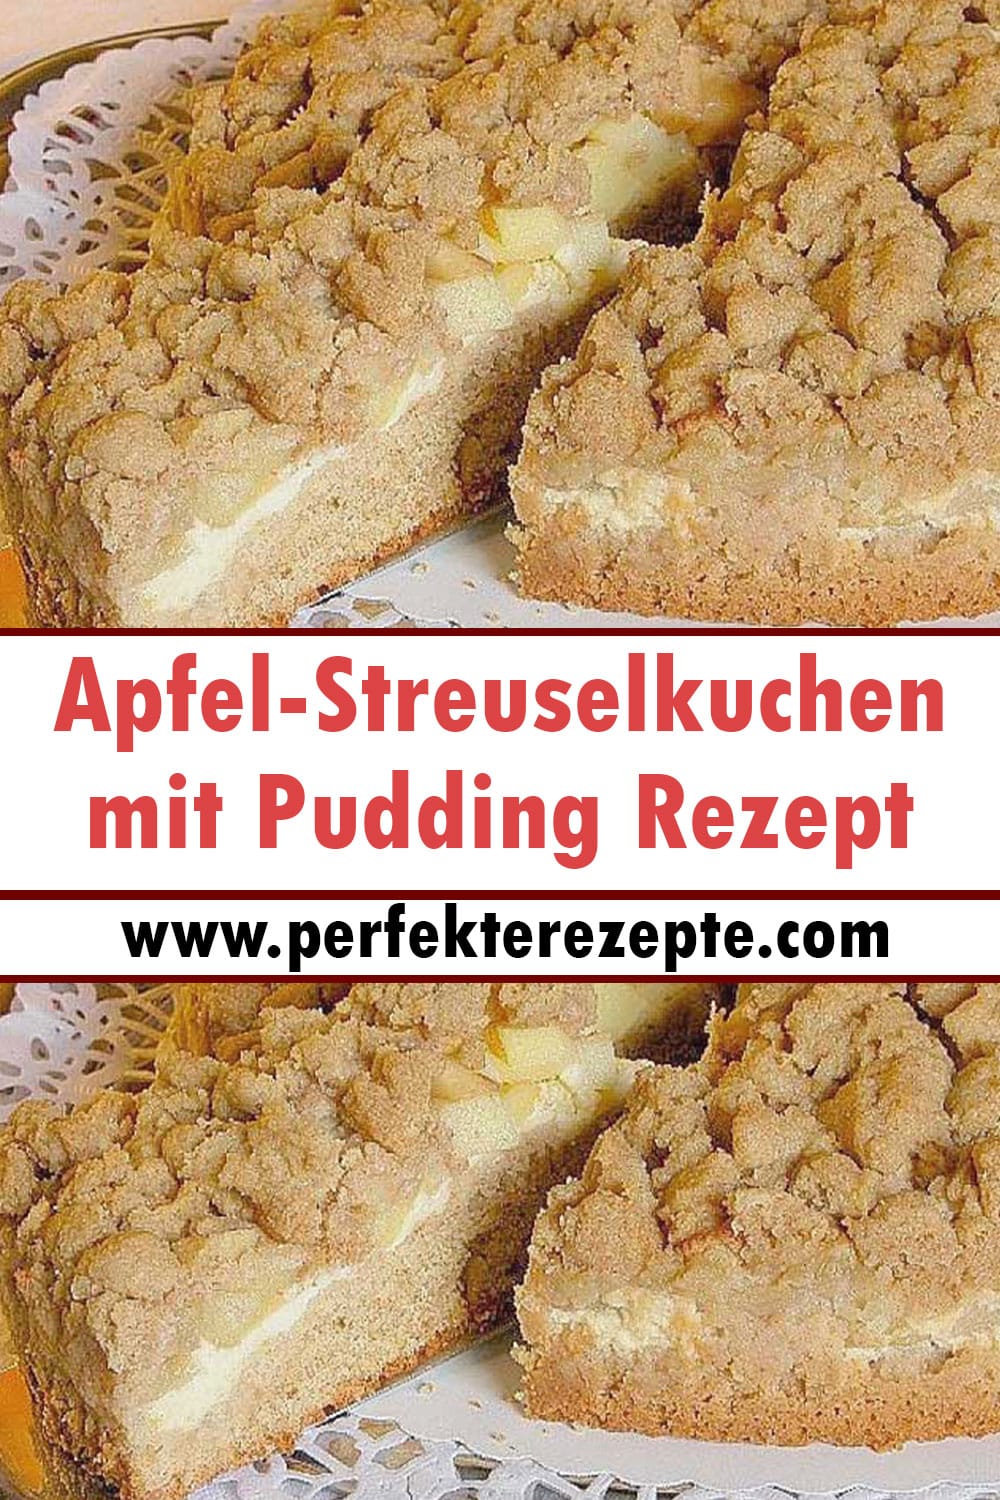 Apfel-Streuselkuchen mit Pudding Rezept